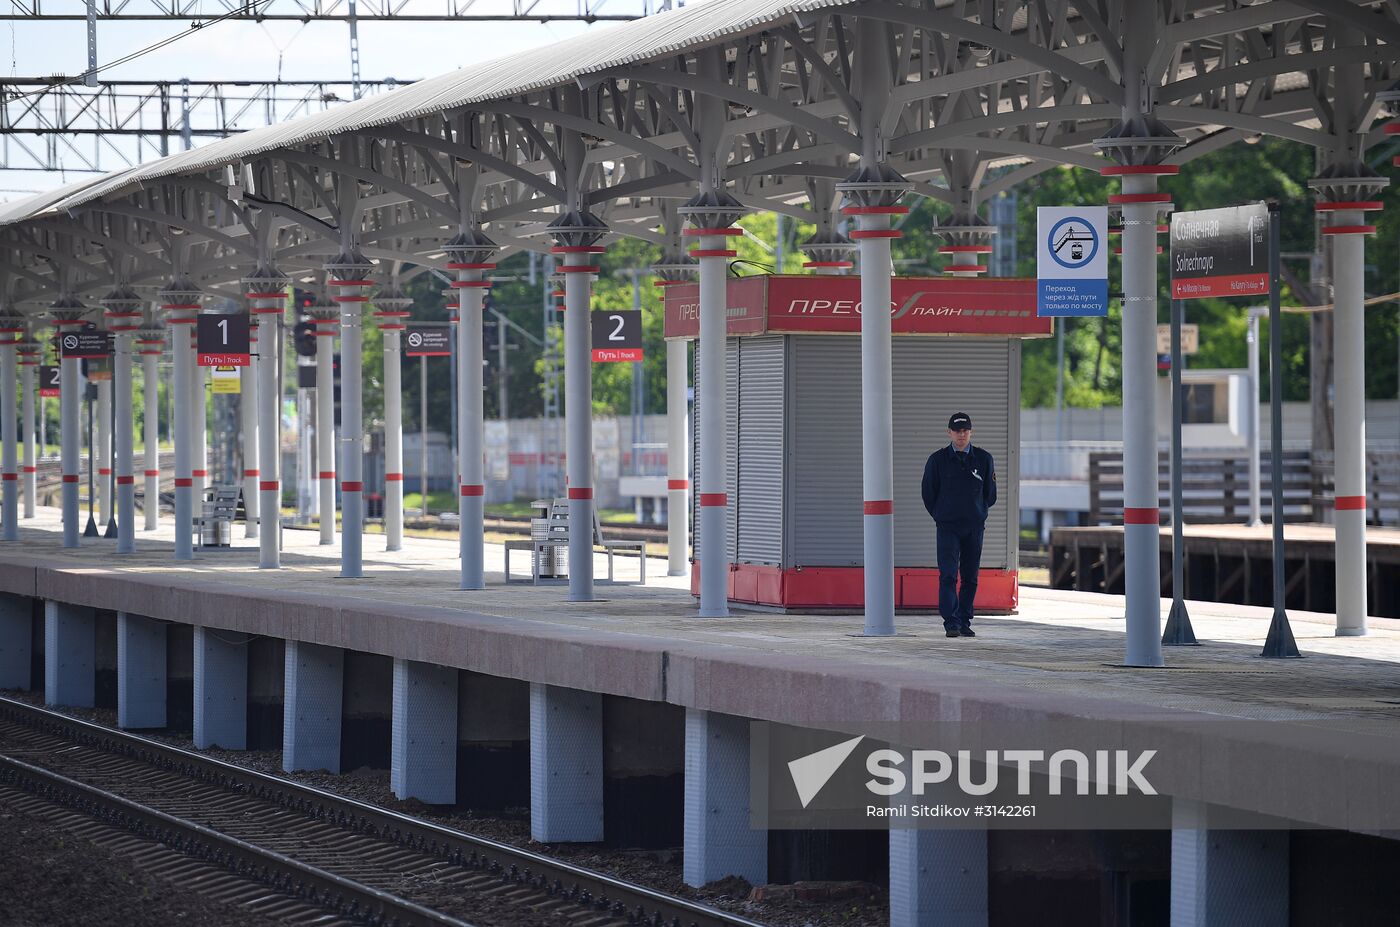 Opening of Solnechnaya transit hub and presentation of Ivolga train